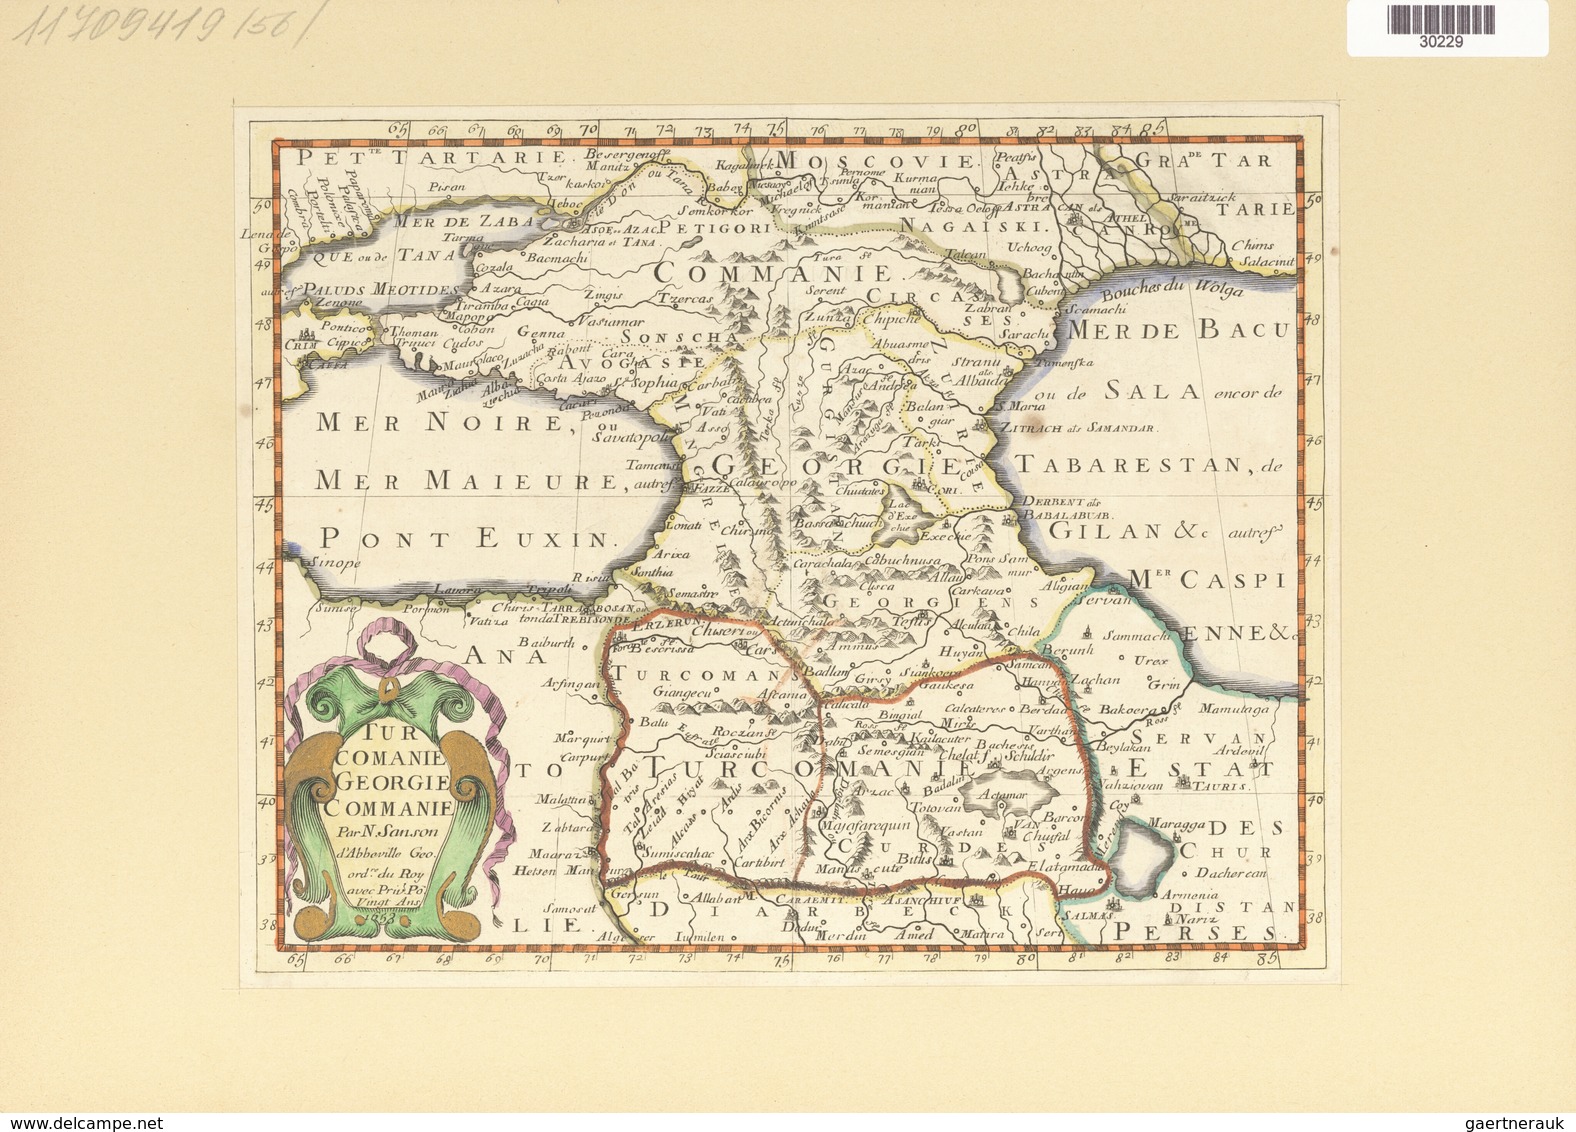 Landkarten Und Stiche: 1734, Turcomanie Georgie Commanie. Map Of The Caucasus Area Under Turkish Rul - Geography